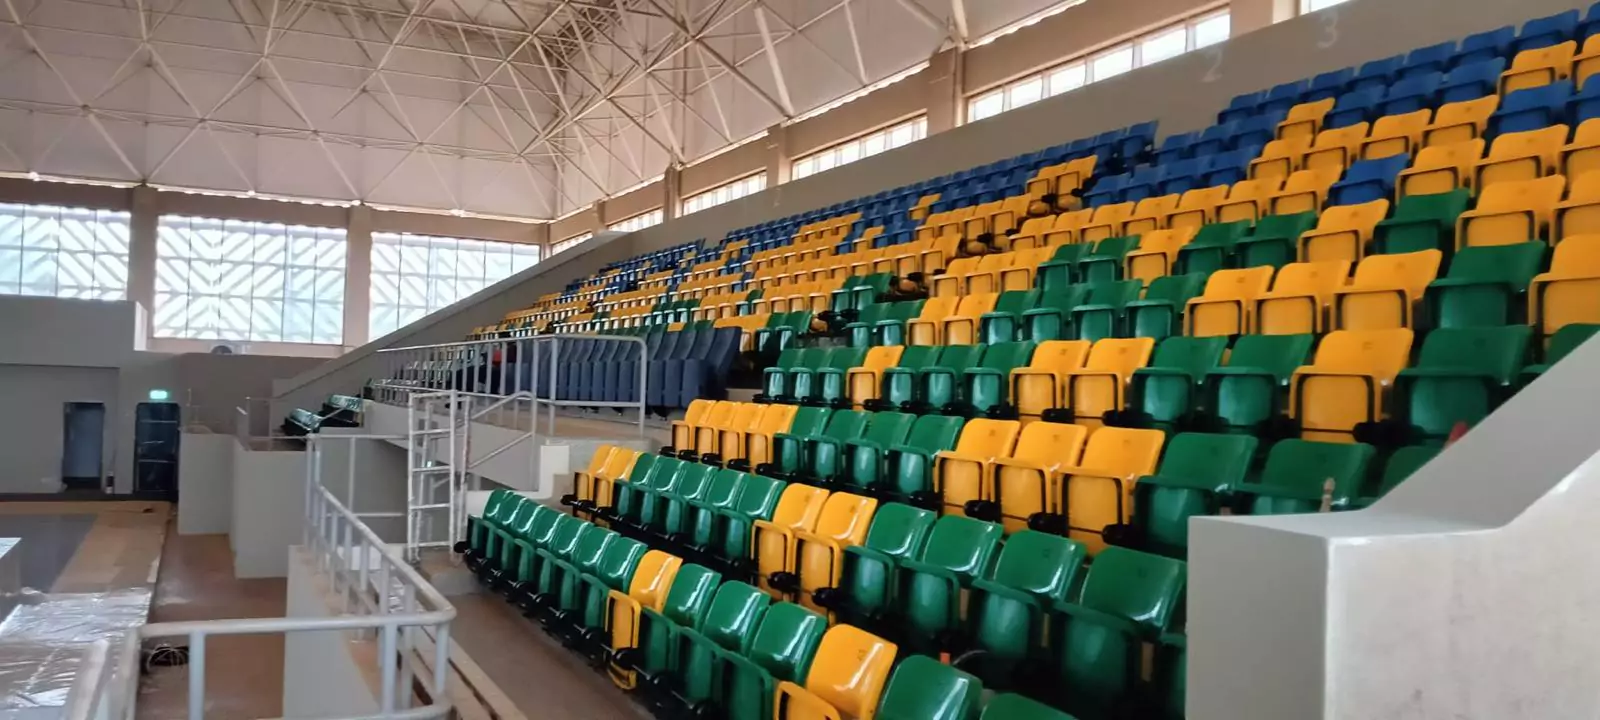 Folding Stadium Seats - Blog Image